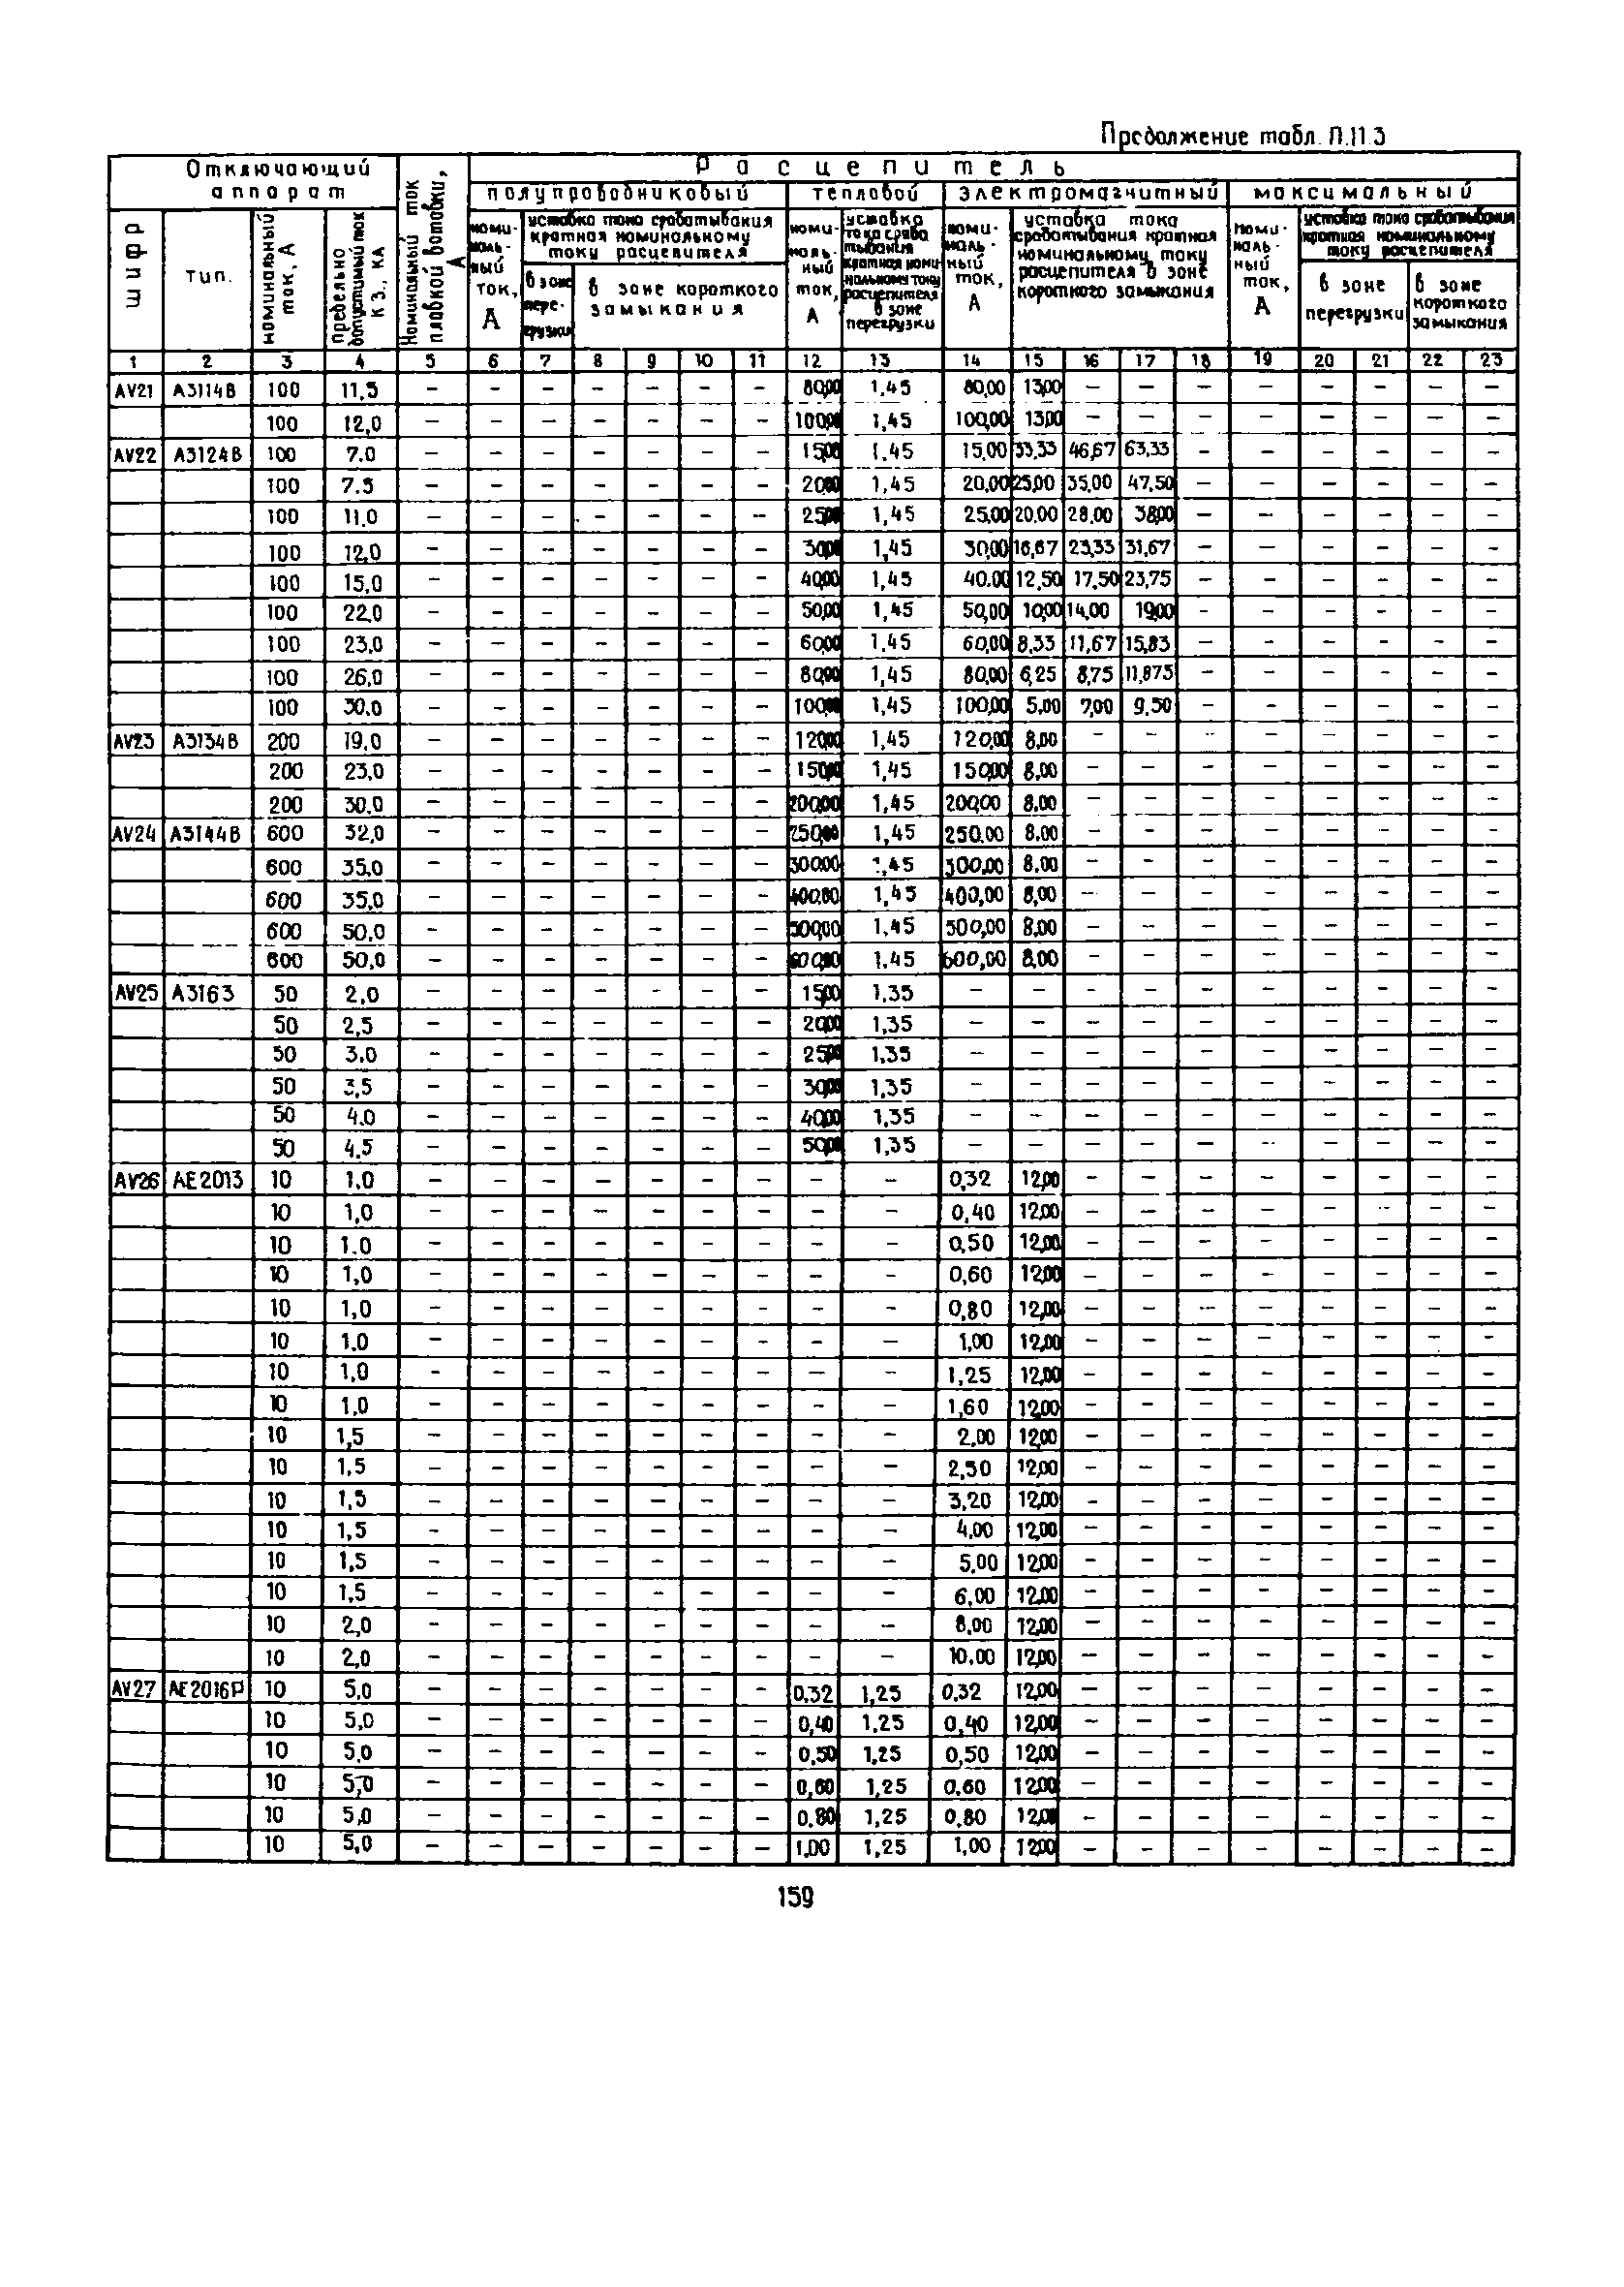 РД 12.13.53-86